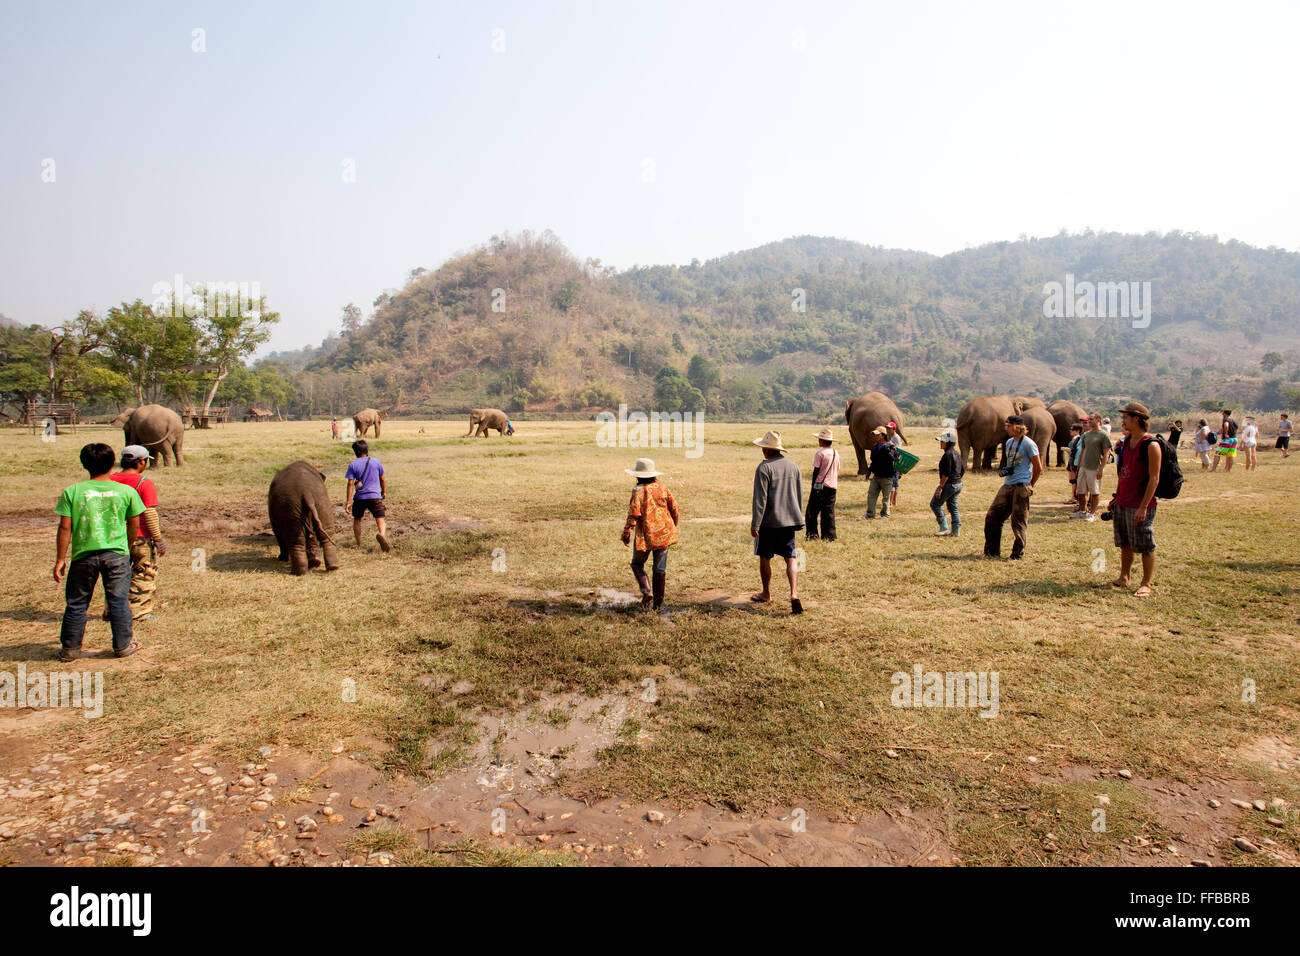 Washing elephants at Elephant Nature Park Stock Photo